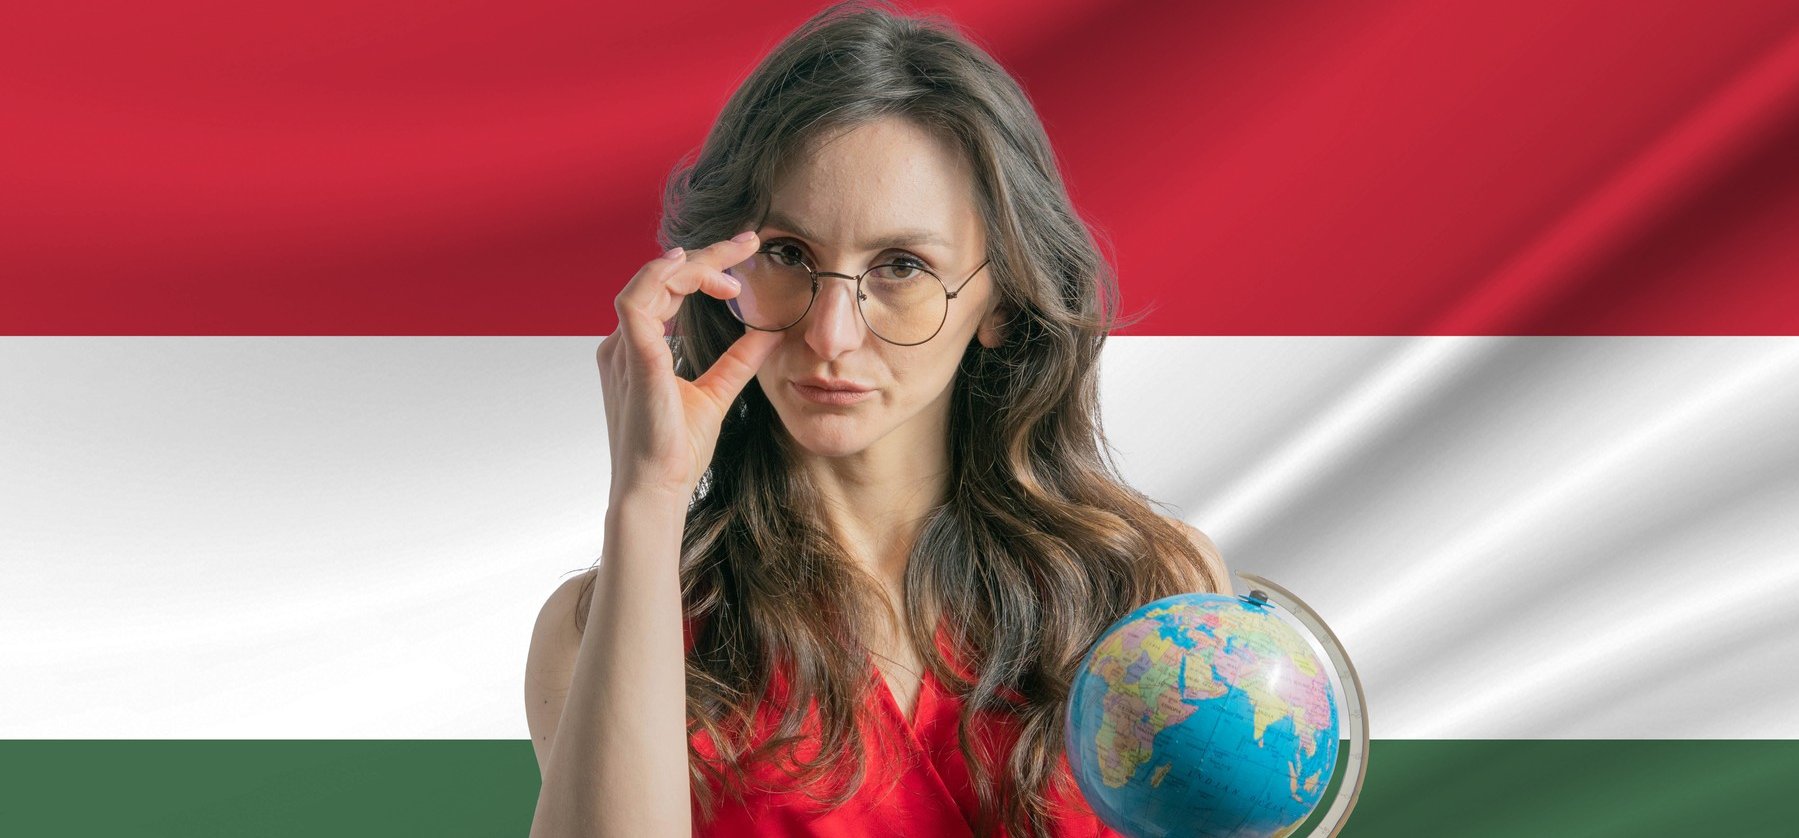 Döbbenetes: íme egy különleges hely Magyarországon, ahol egyszerre 3 országban lehetsz - videó